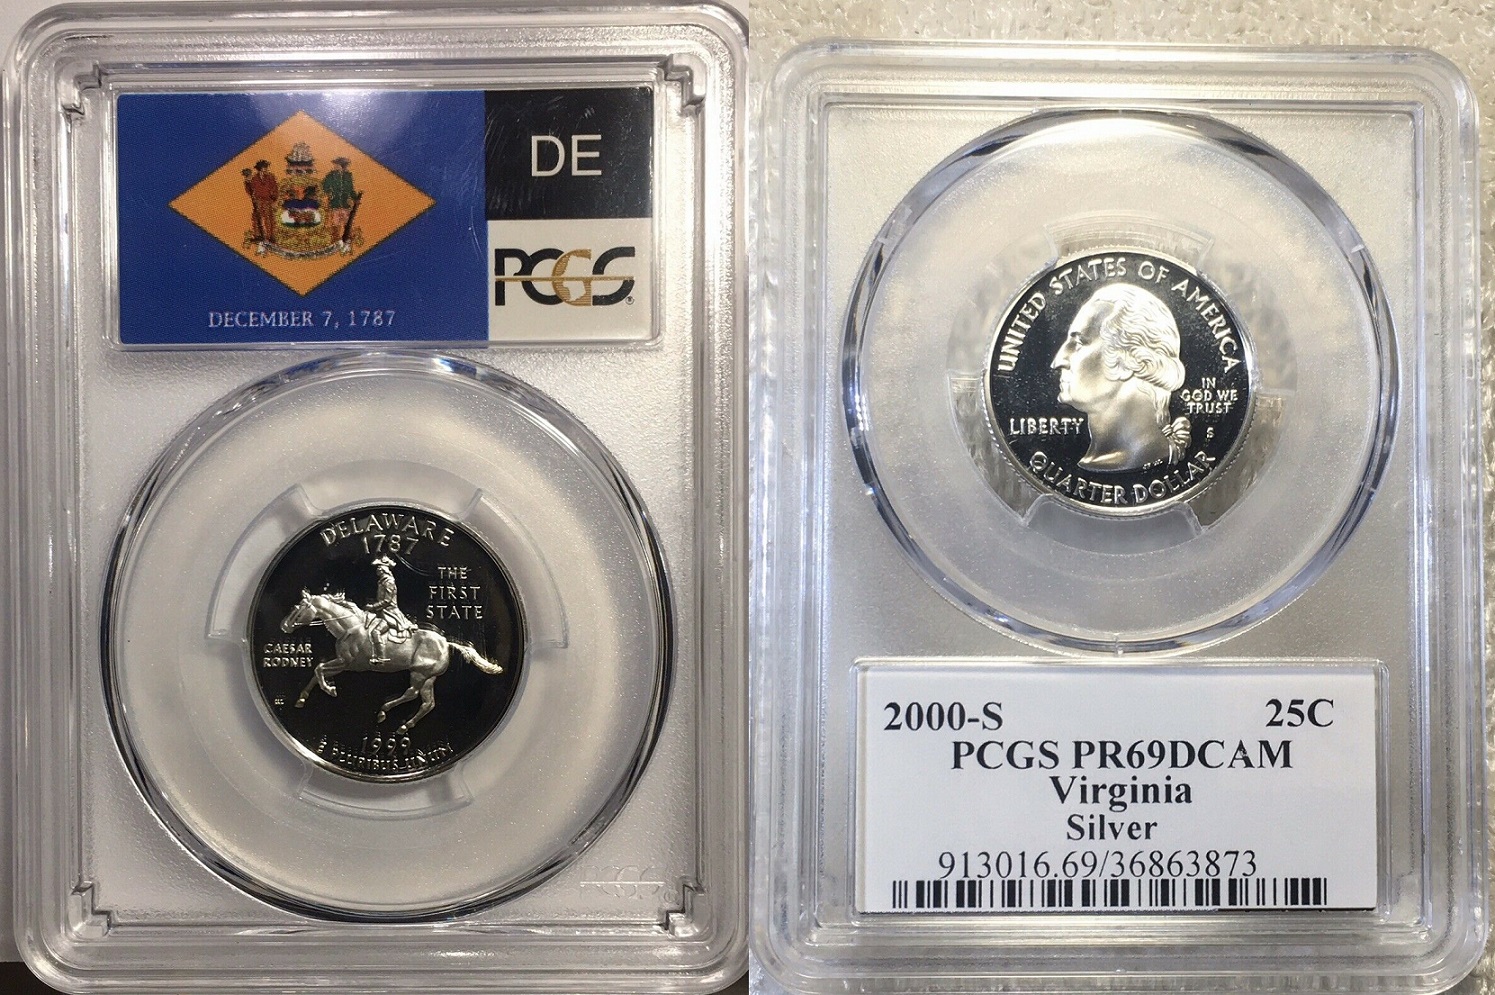 1999-S Delaware Silver State Quarter PCGS Prf-69 DCAM  $20. + $3.  264511467592  coinspotstor o1.jpg